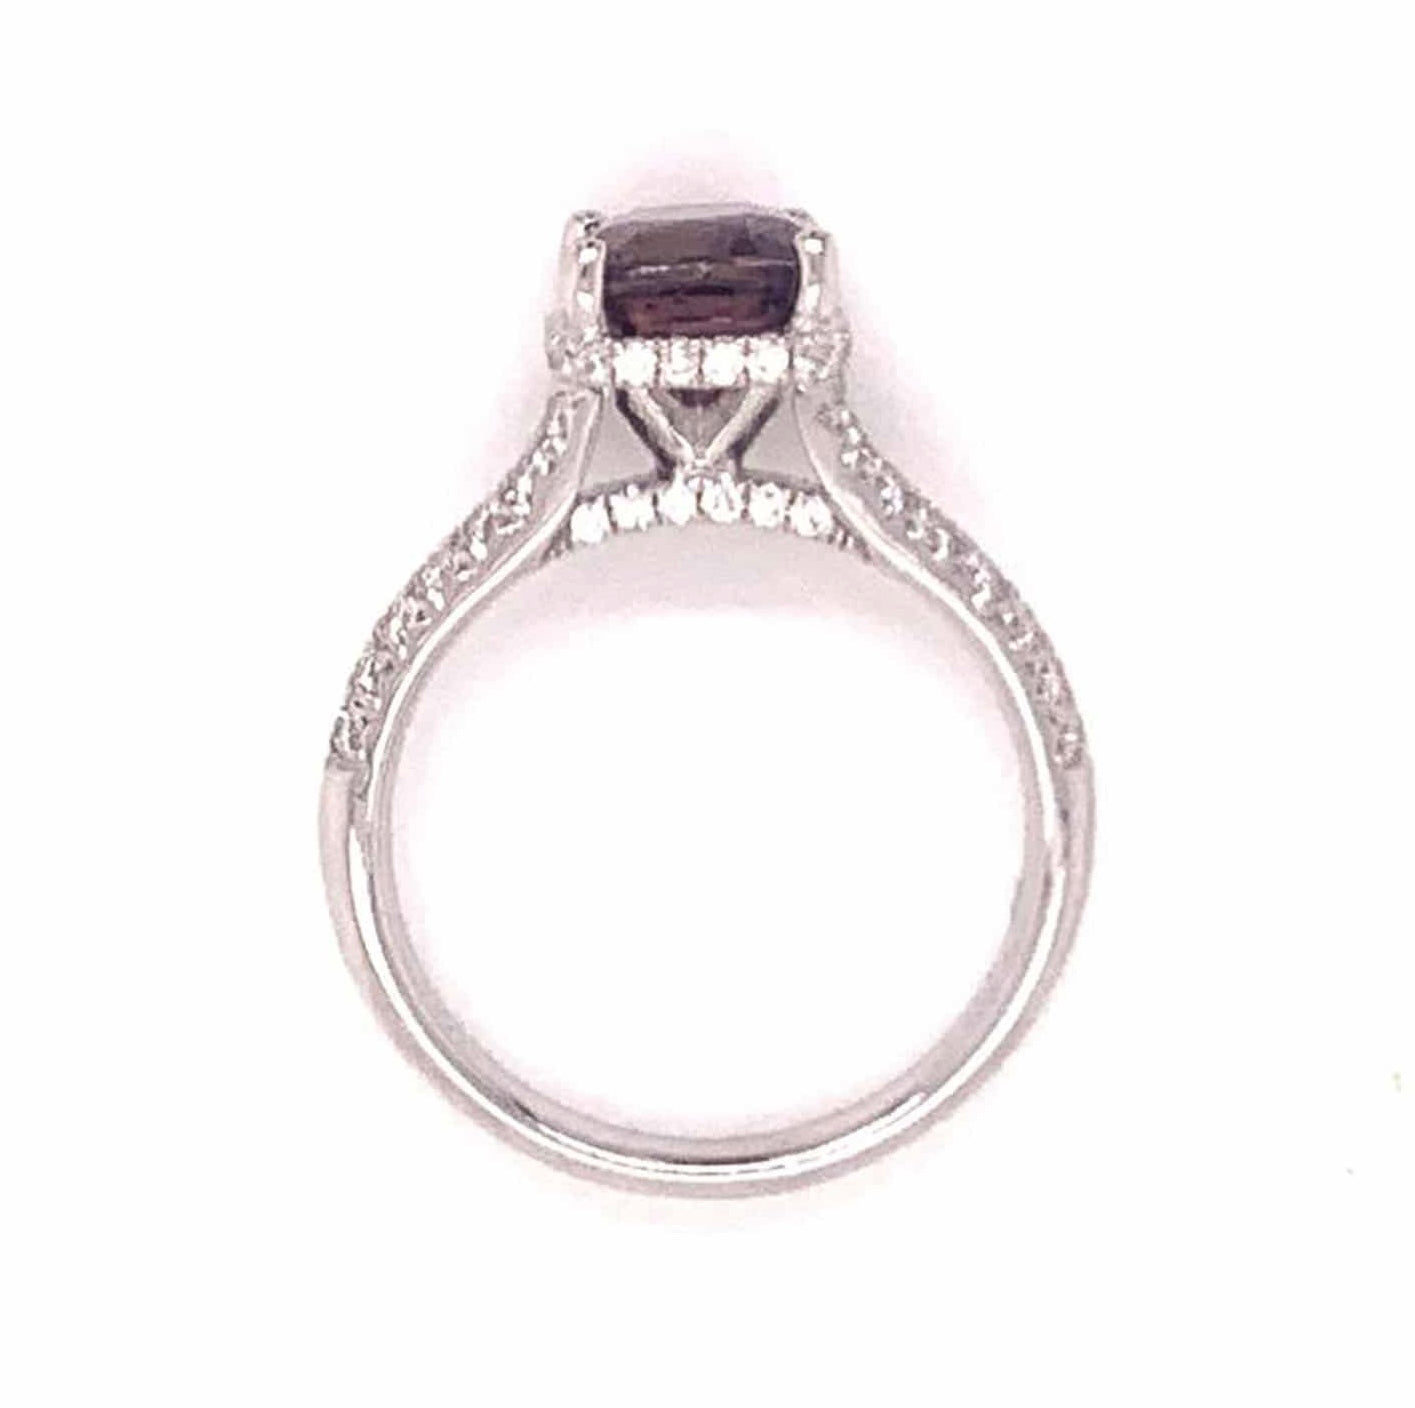 Diamond Sapphire Ring 18k Gold WG Women 3.027 Ct Certified $3950 913126 - Certified Fine Jewelry